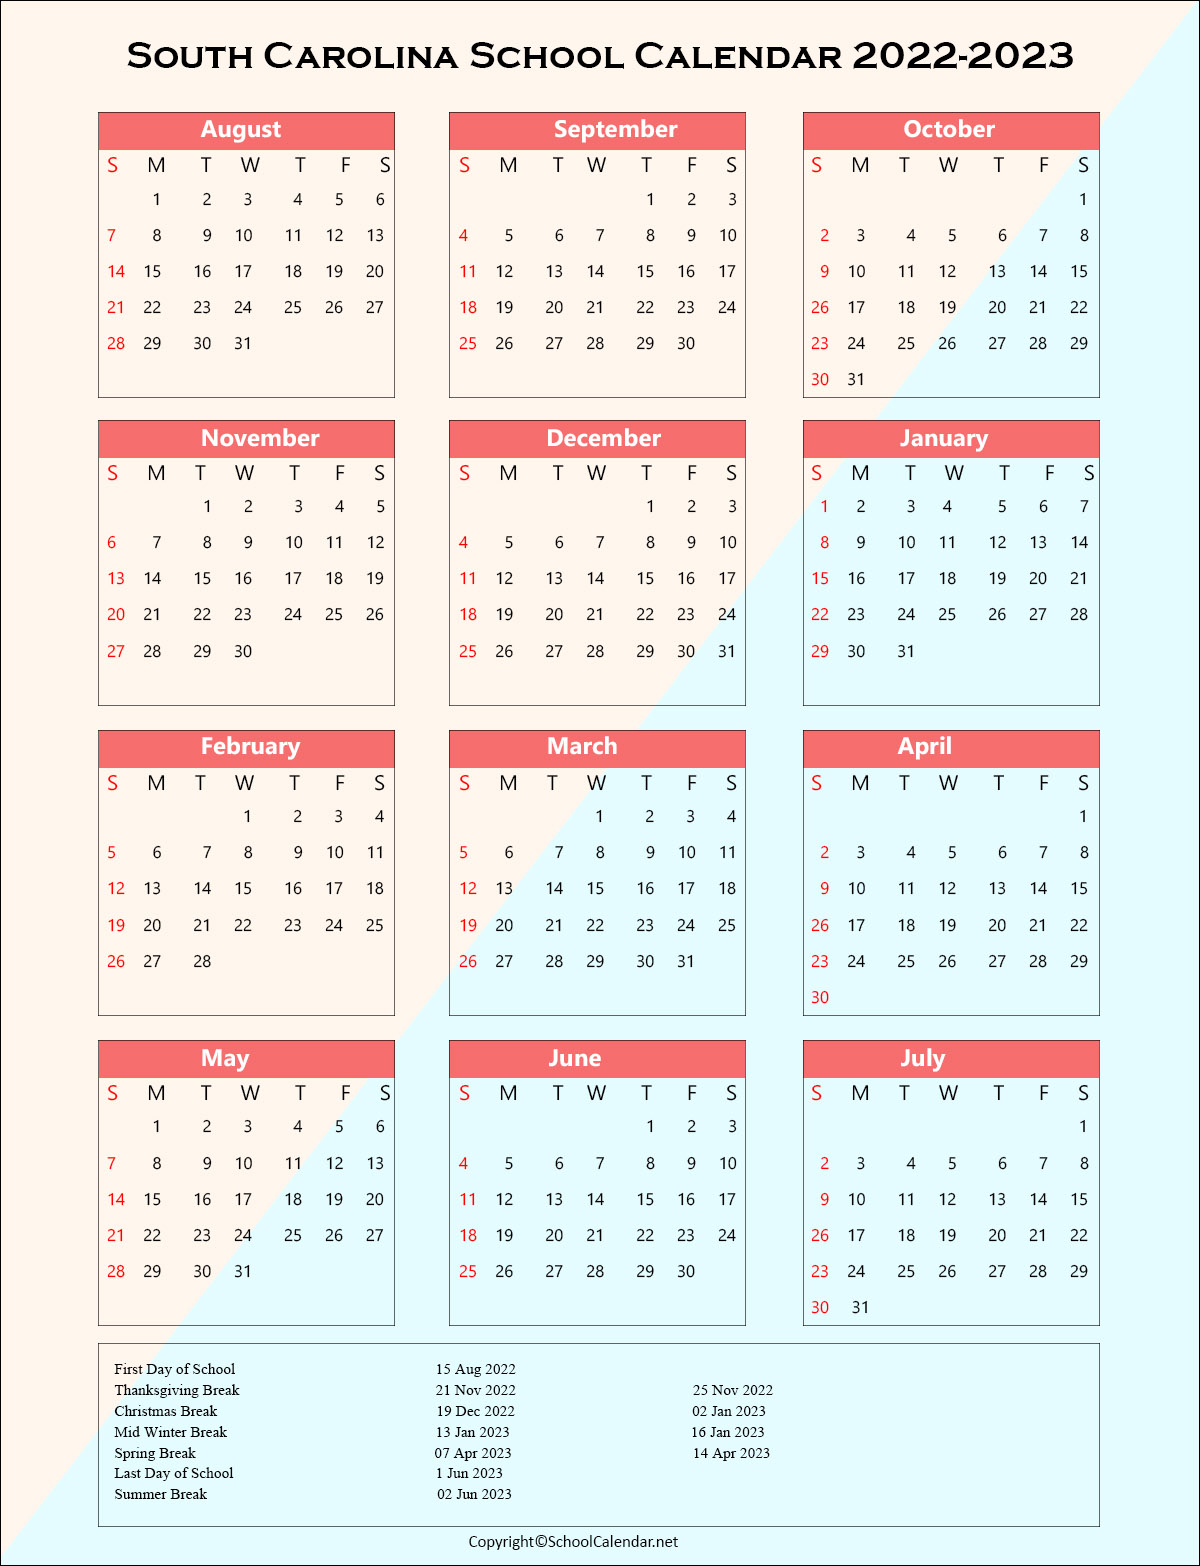 South-Carolina School Holiday Calendar 2022